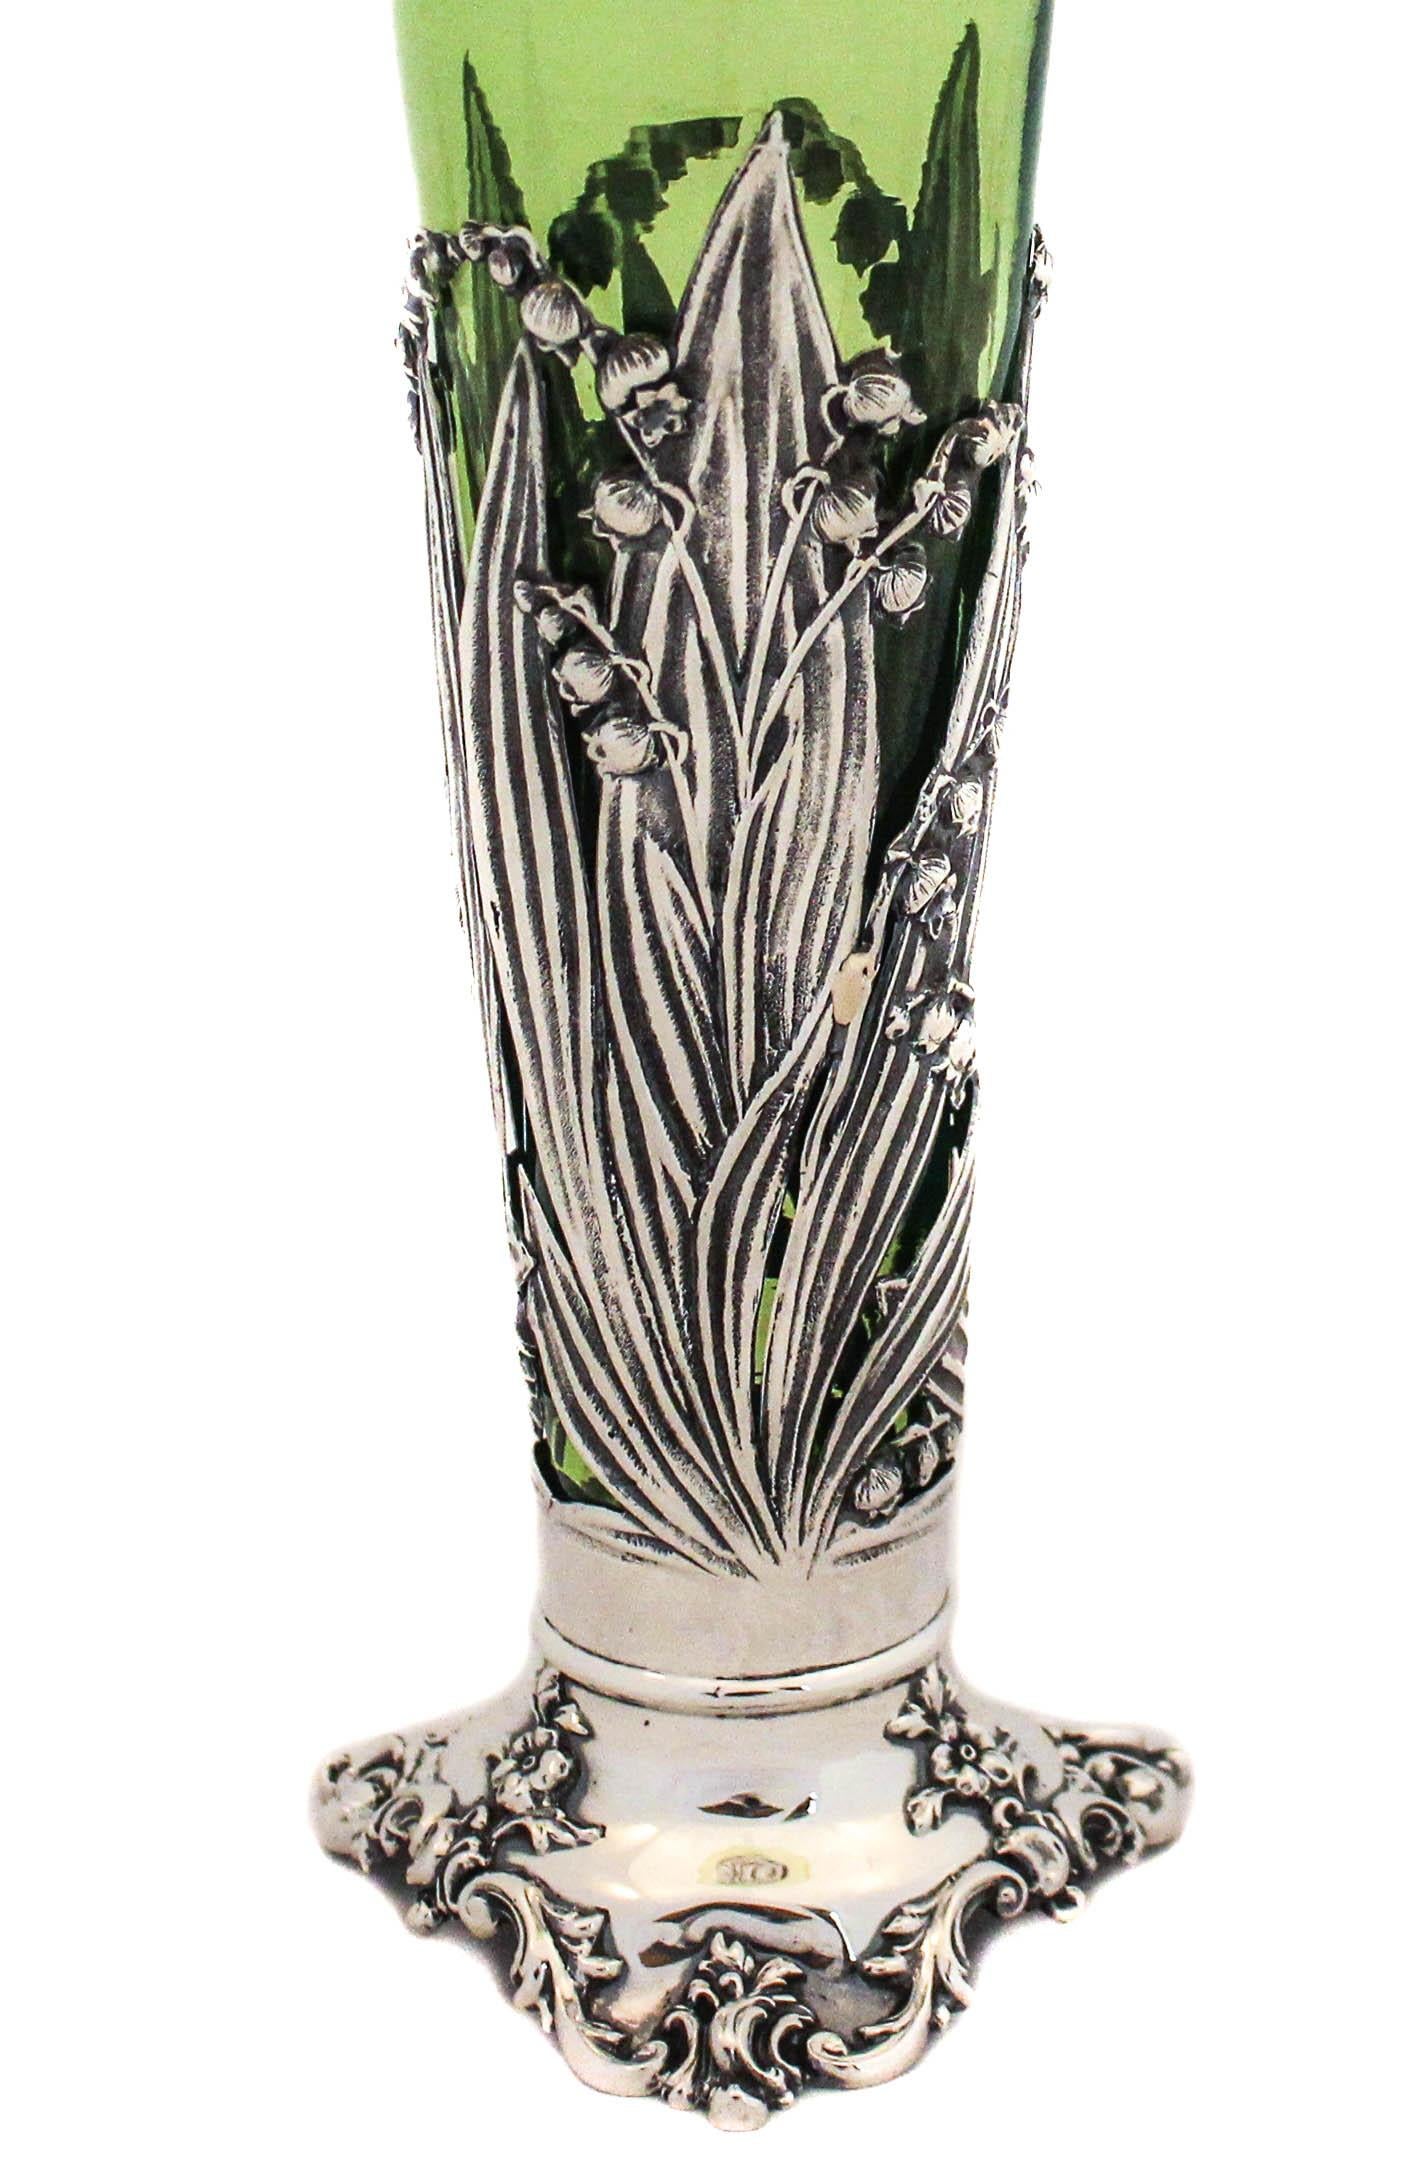 Si vous aimez l'Art Nouveau autant que moi, vous serez très excité par cet article.  Un vase en argent sterling avec une doublure vert tilleul.  Le revêtement est amovible, il est donc facile à laver, à sécher et à remettre dans la base en argent. 